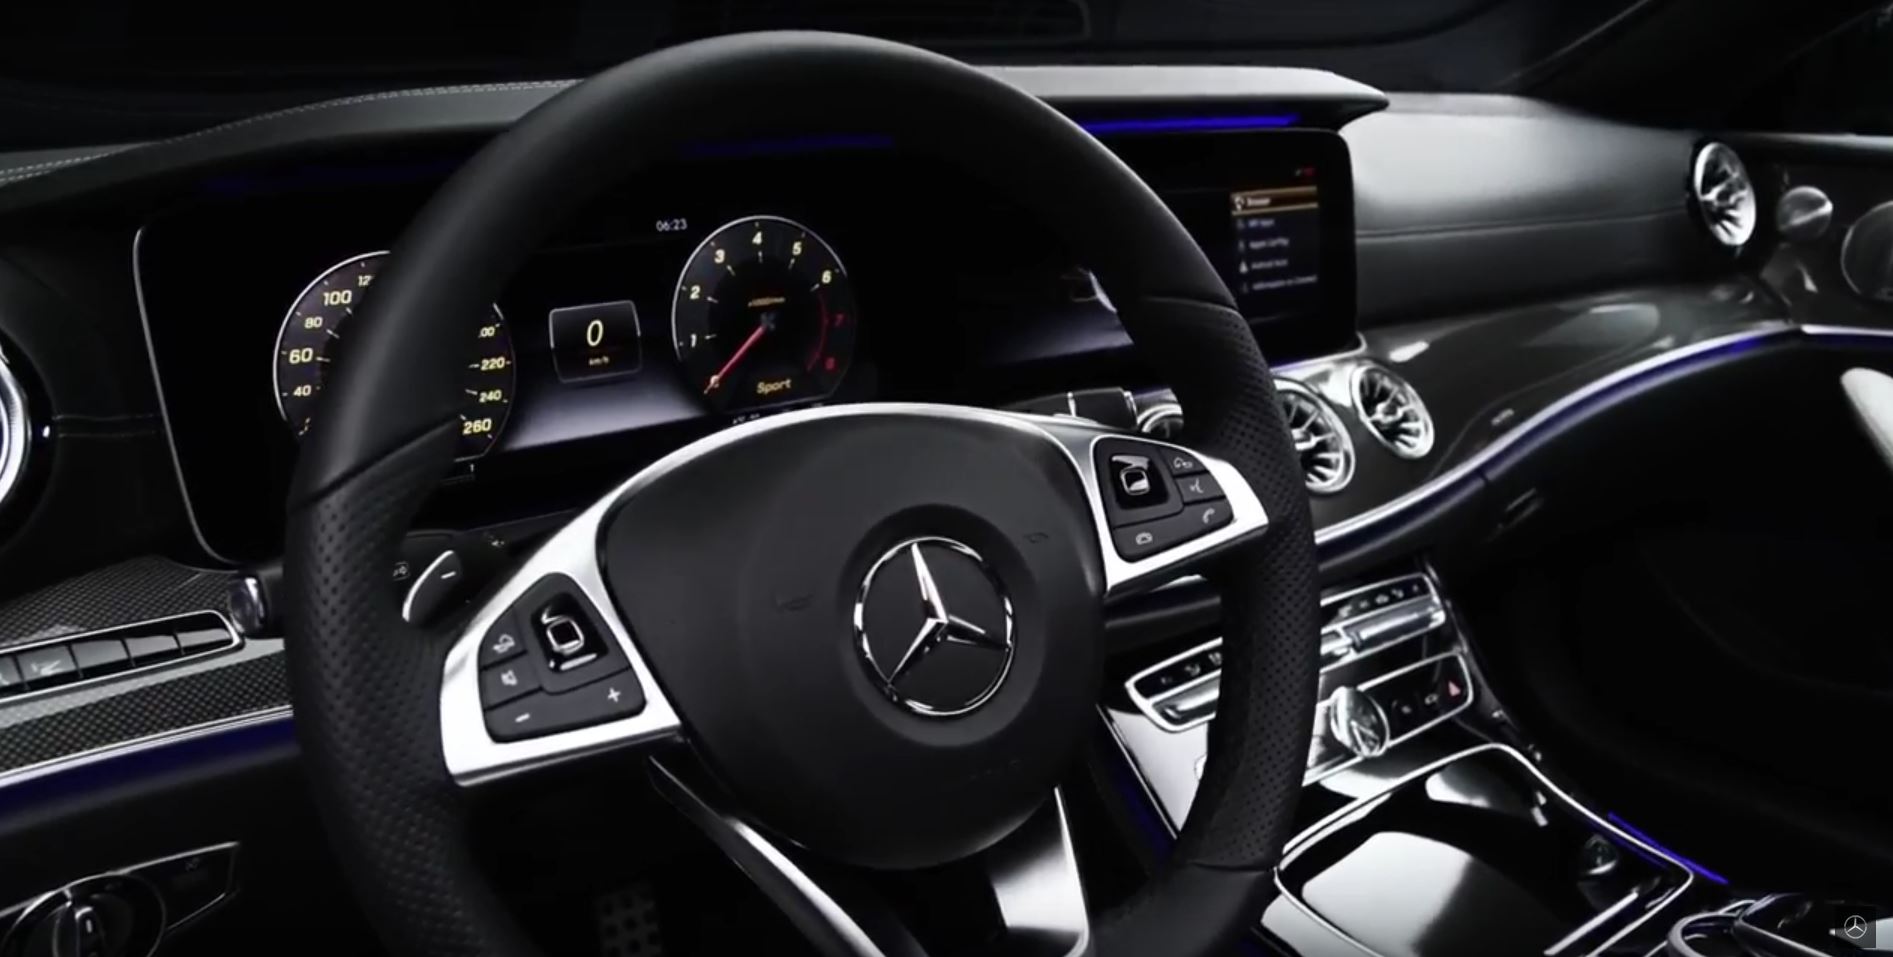 2018 Mercedes E Class Coupe Teaser Reveals Interior